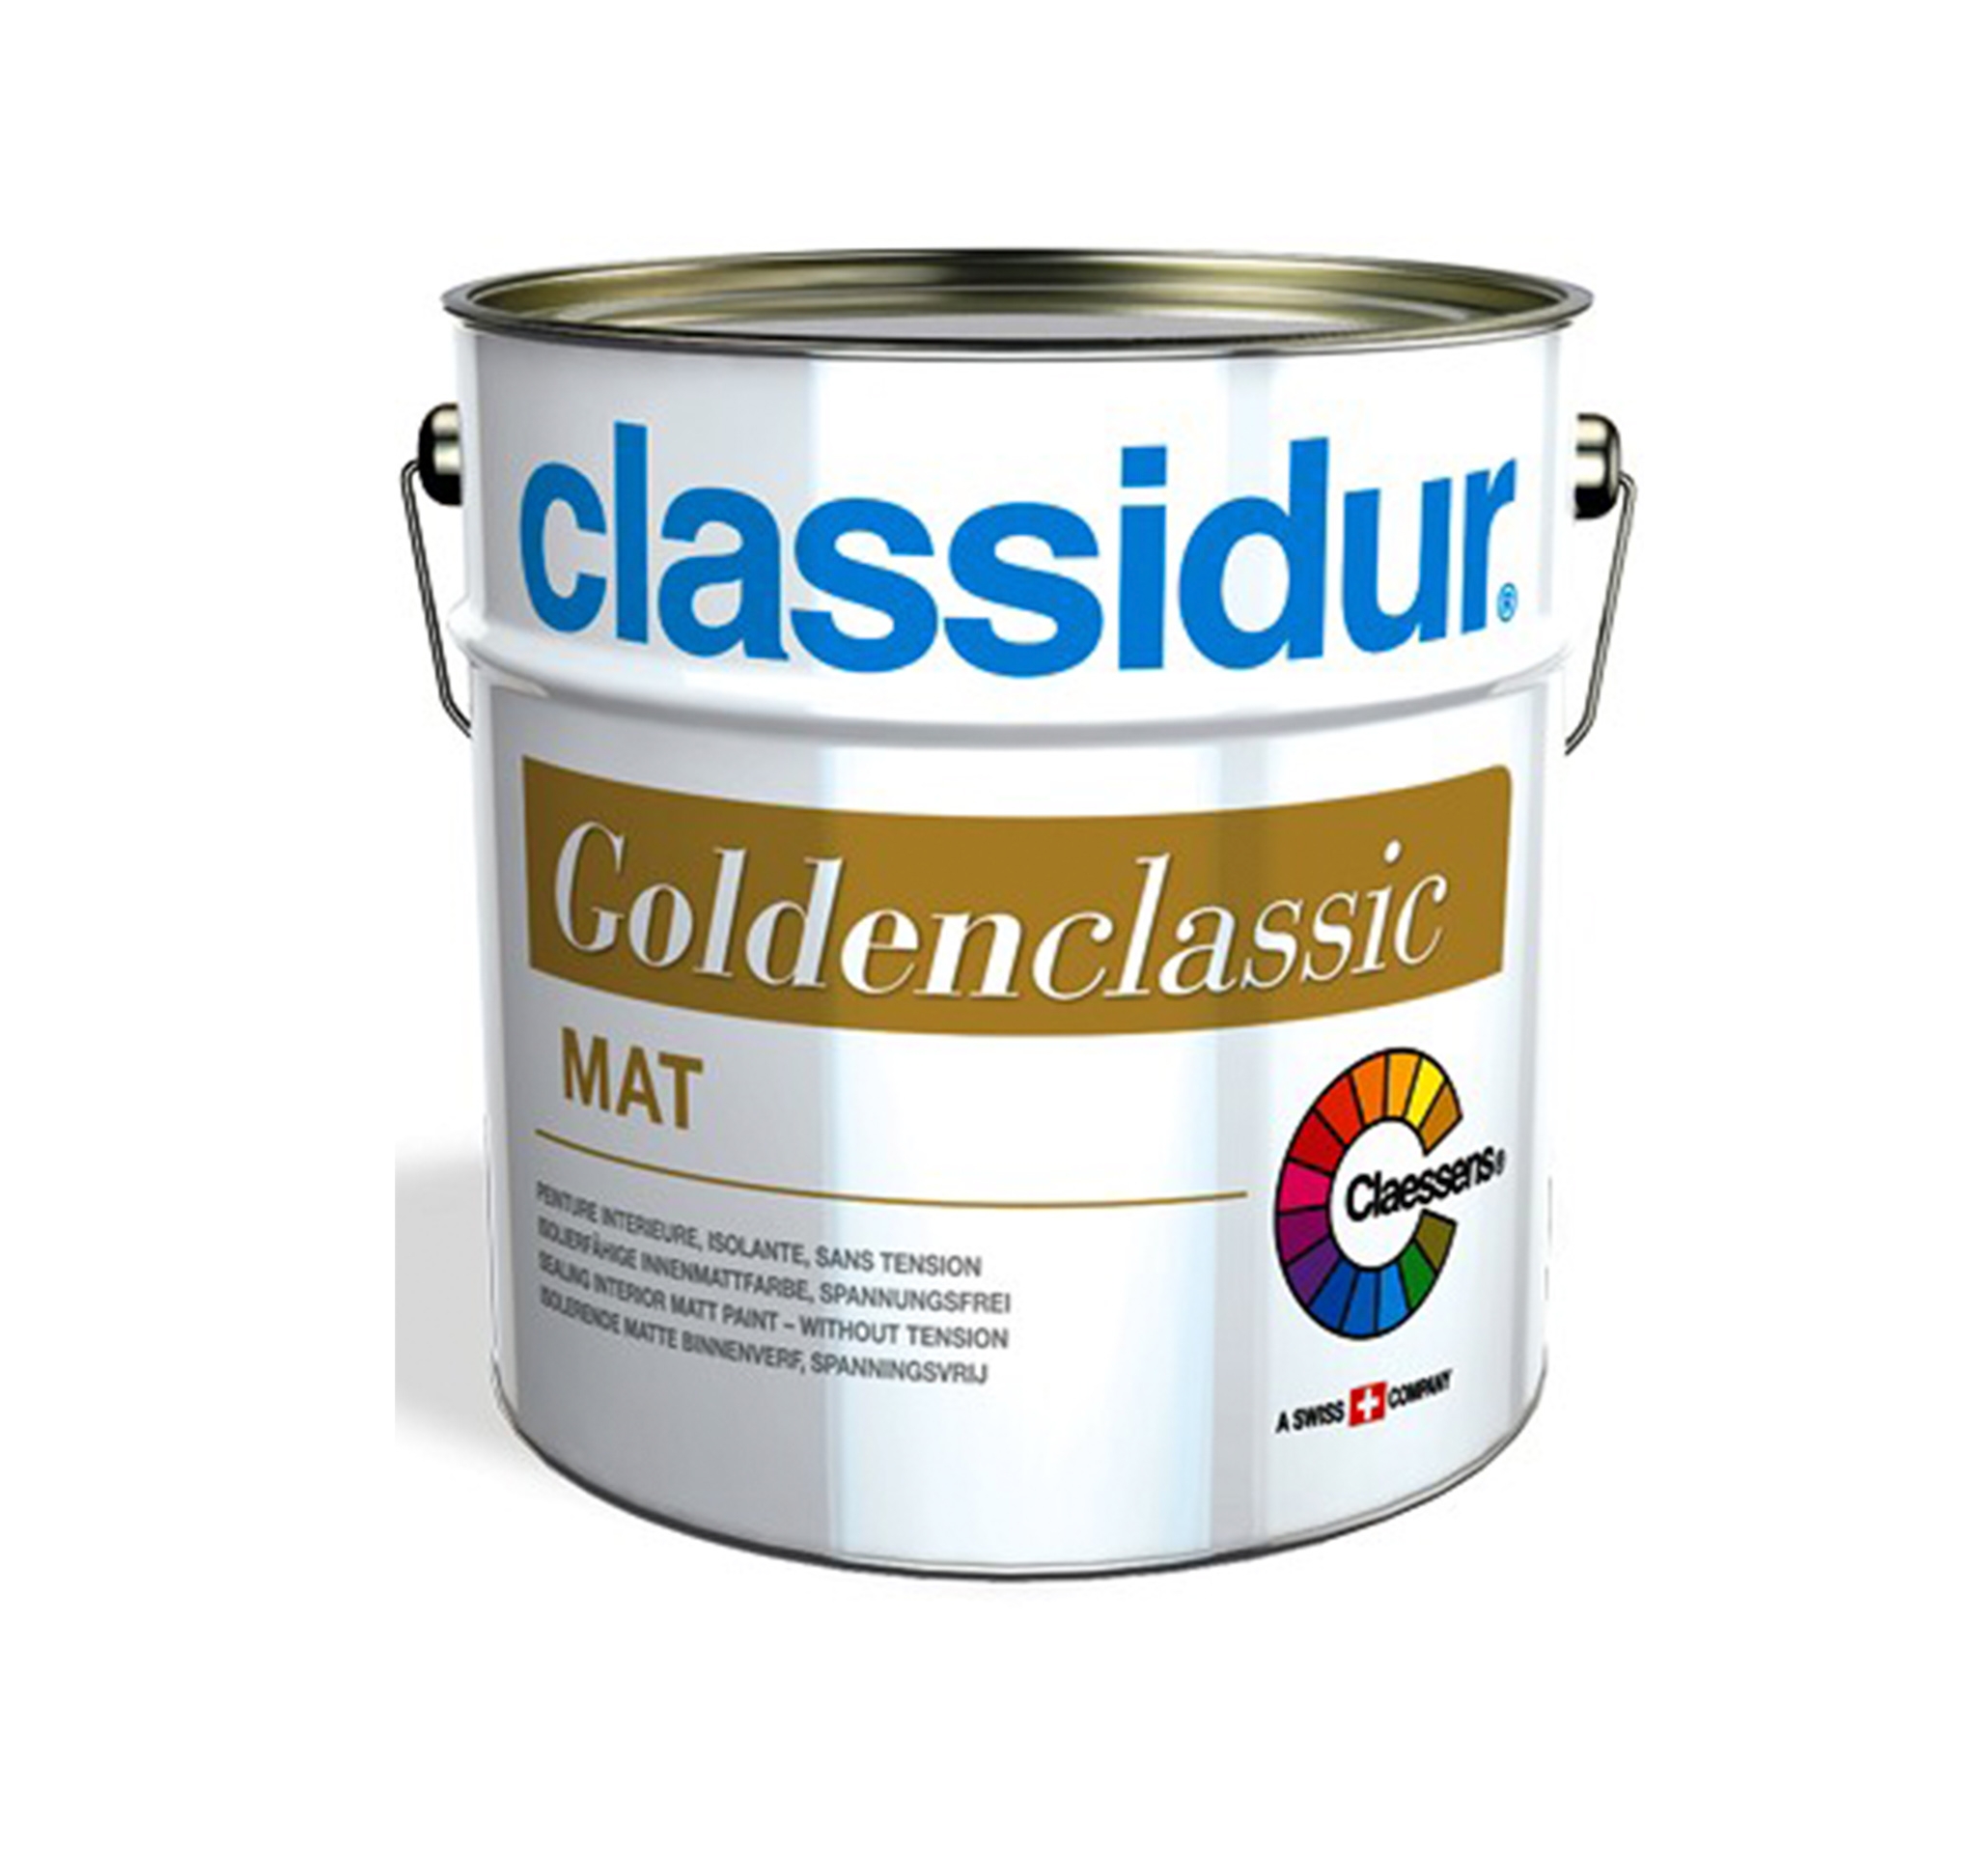 Classidur Golden Classic